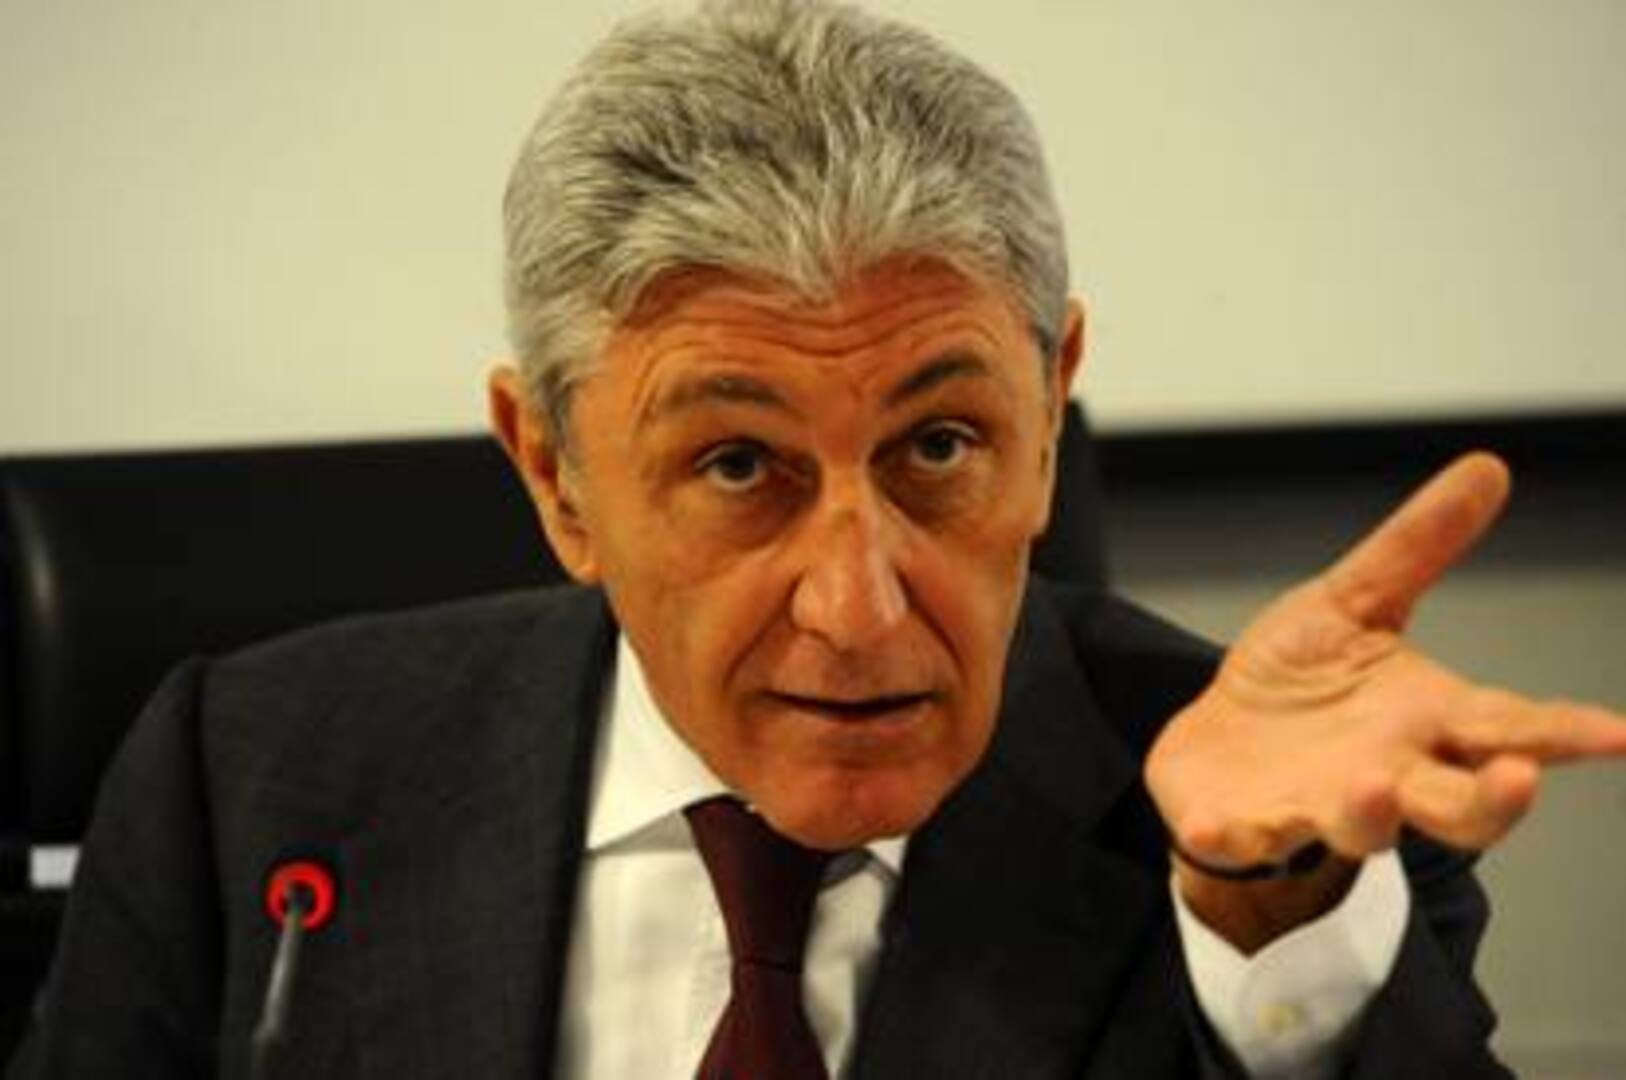 Bassolino critica l’immobilismo a Napoli: “Nessun cambiamento in due anni”